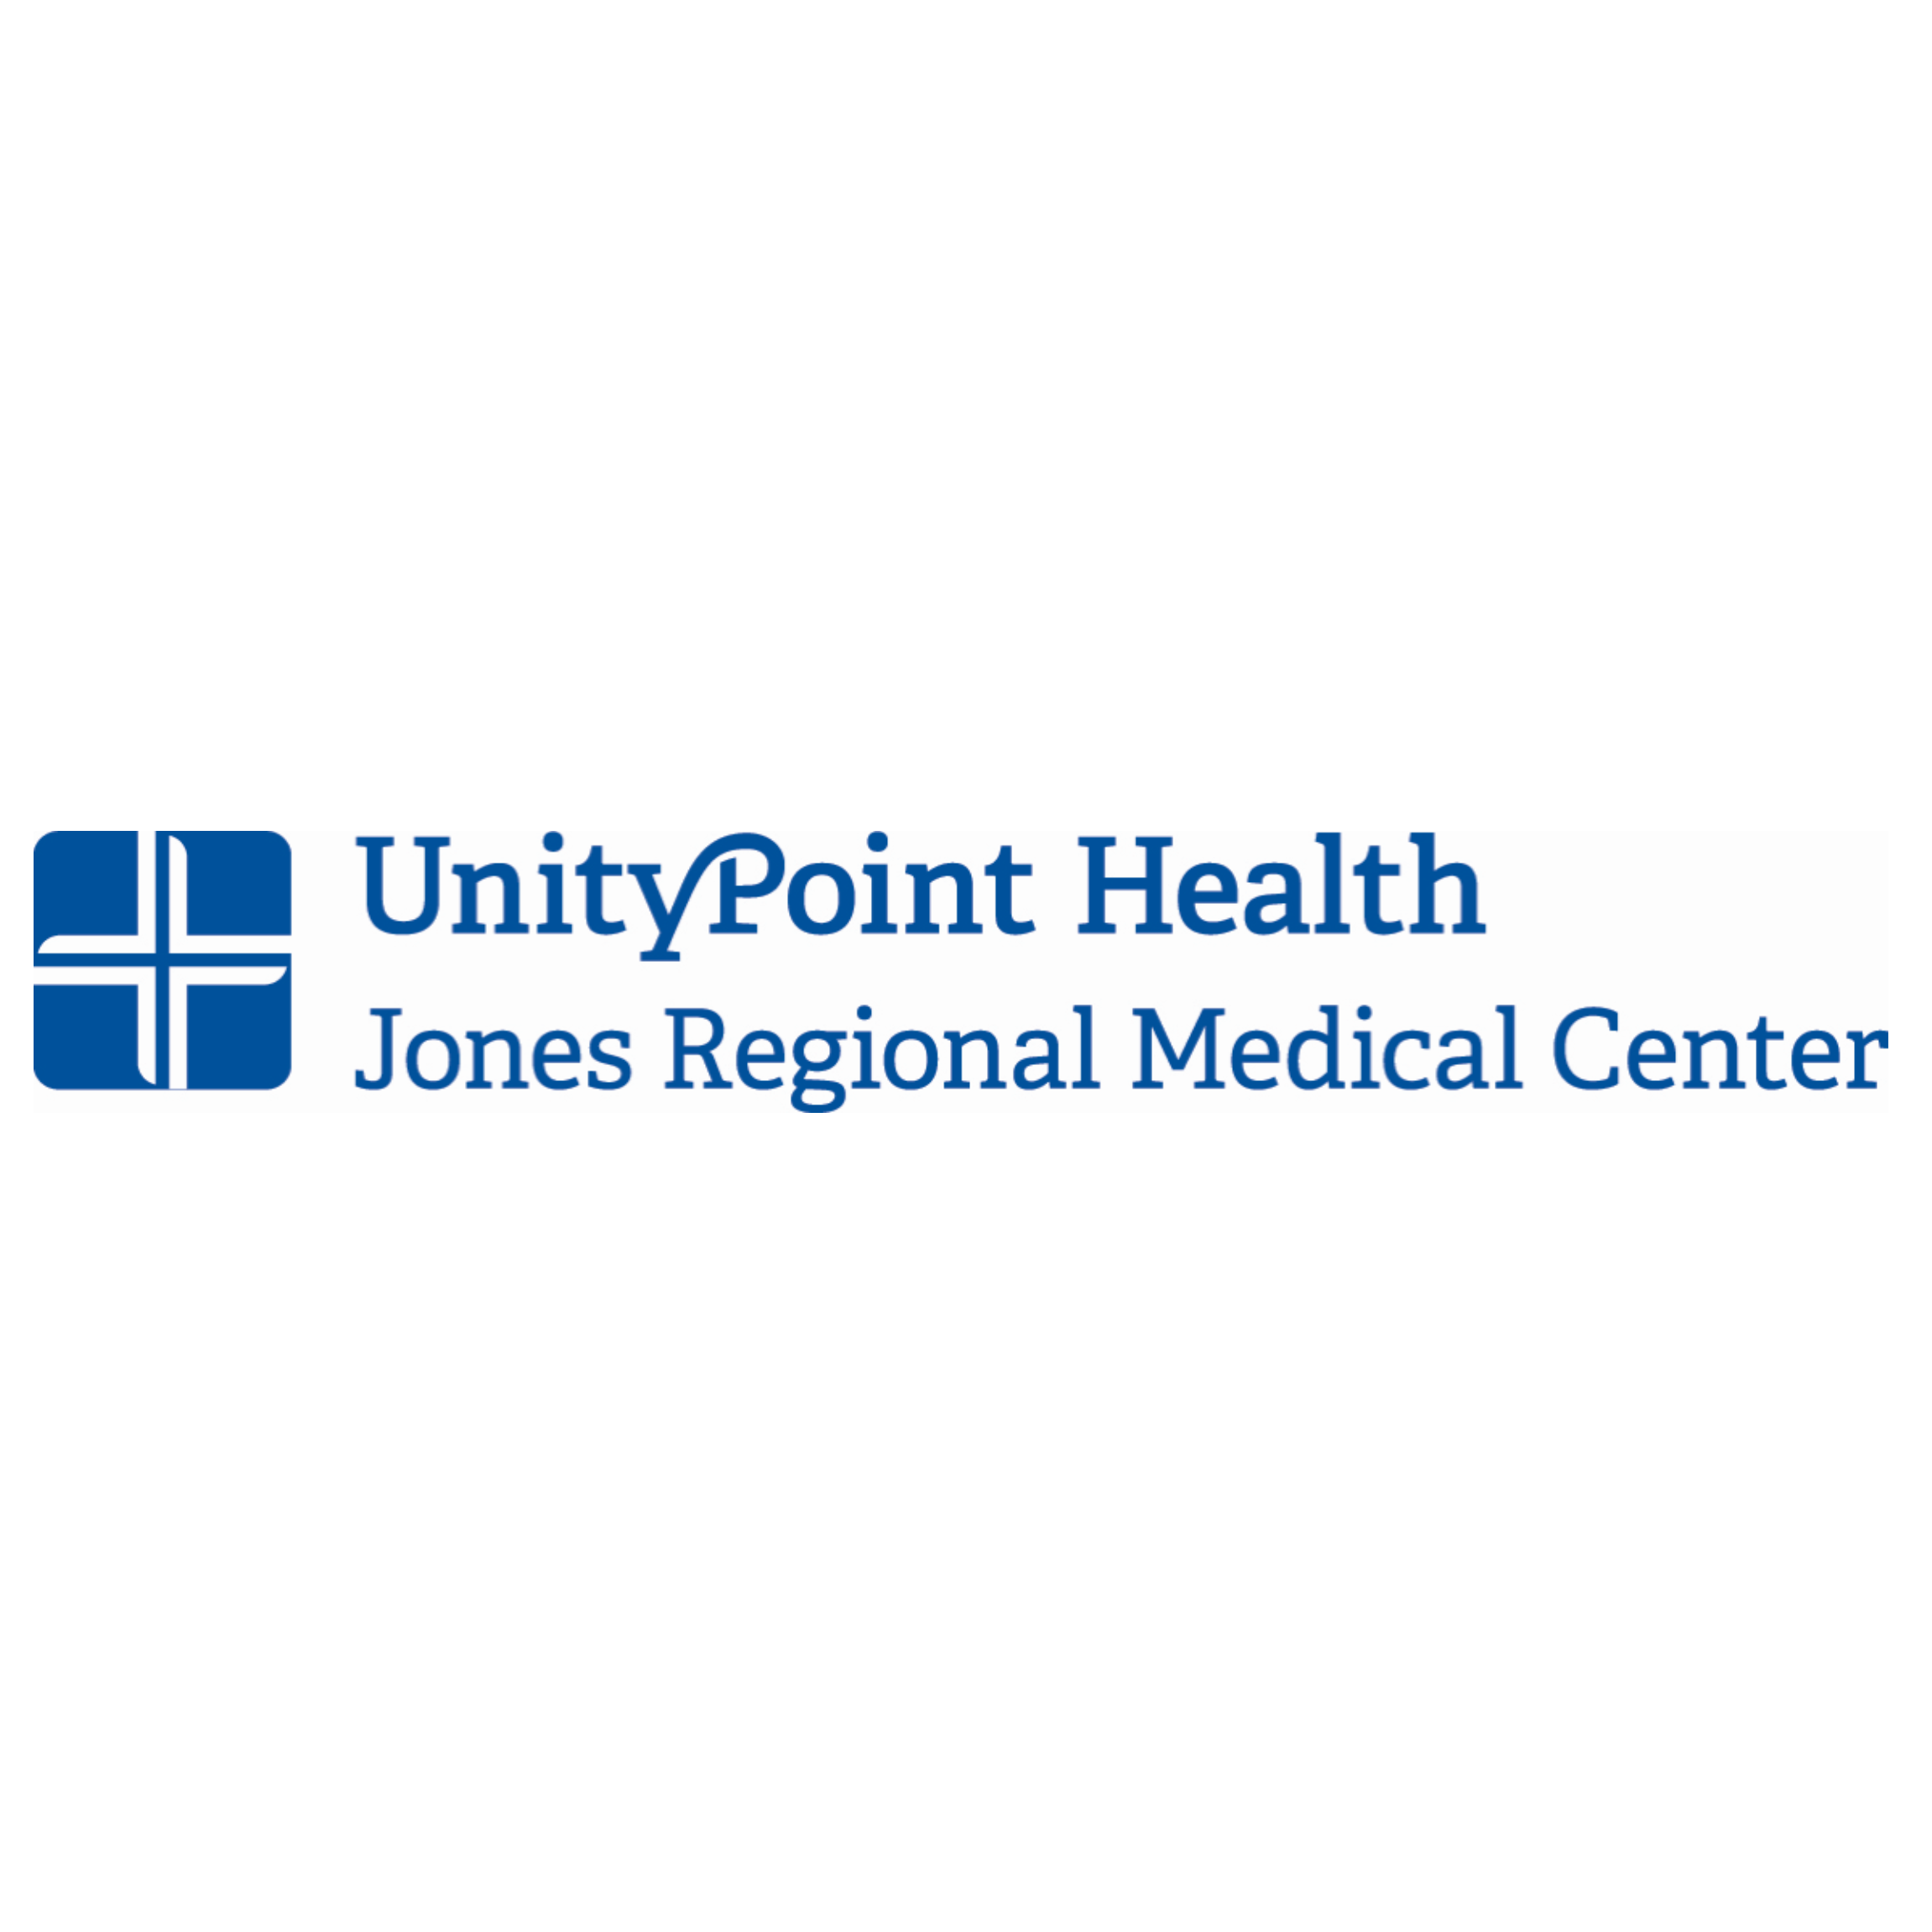 Jones Regional Medical Center